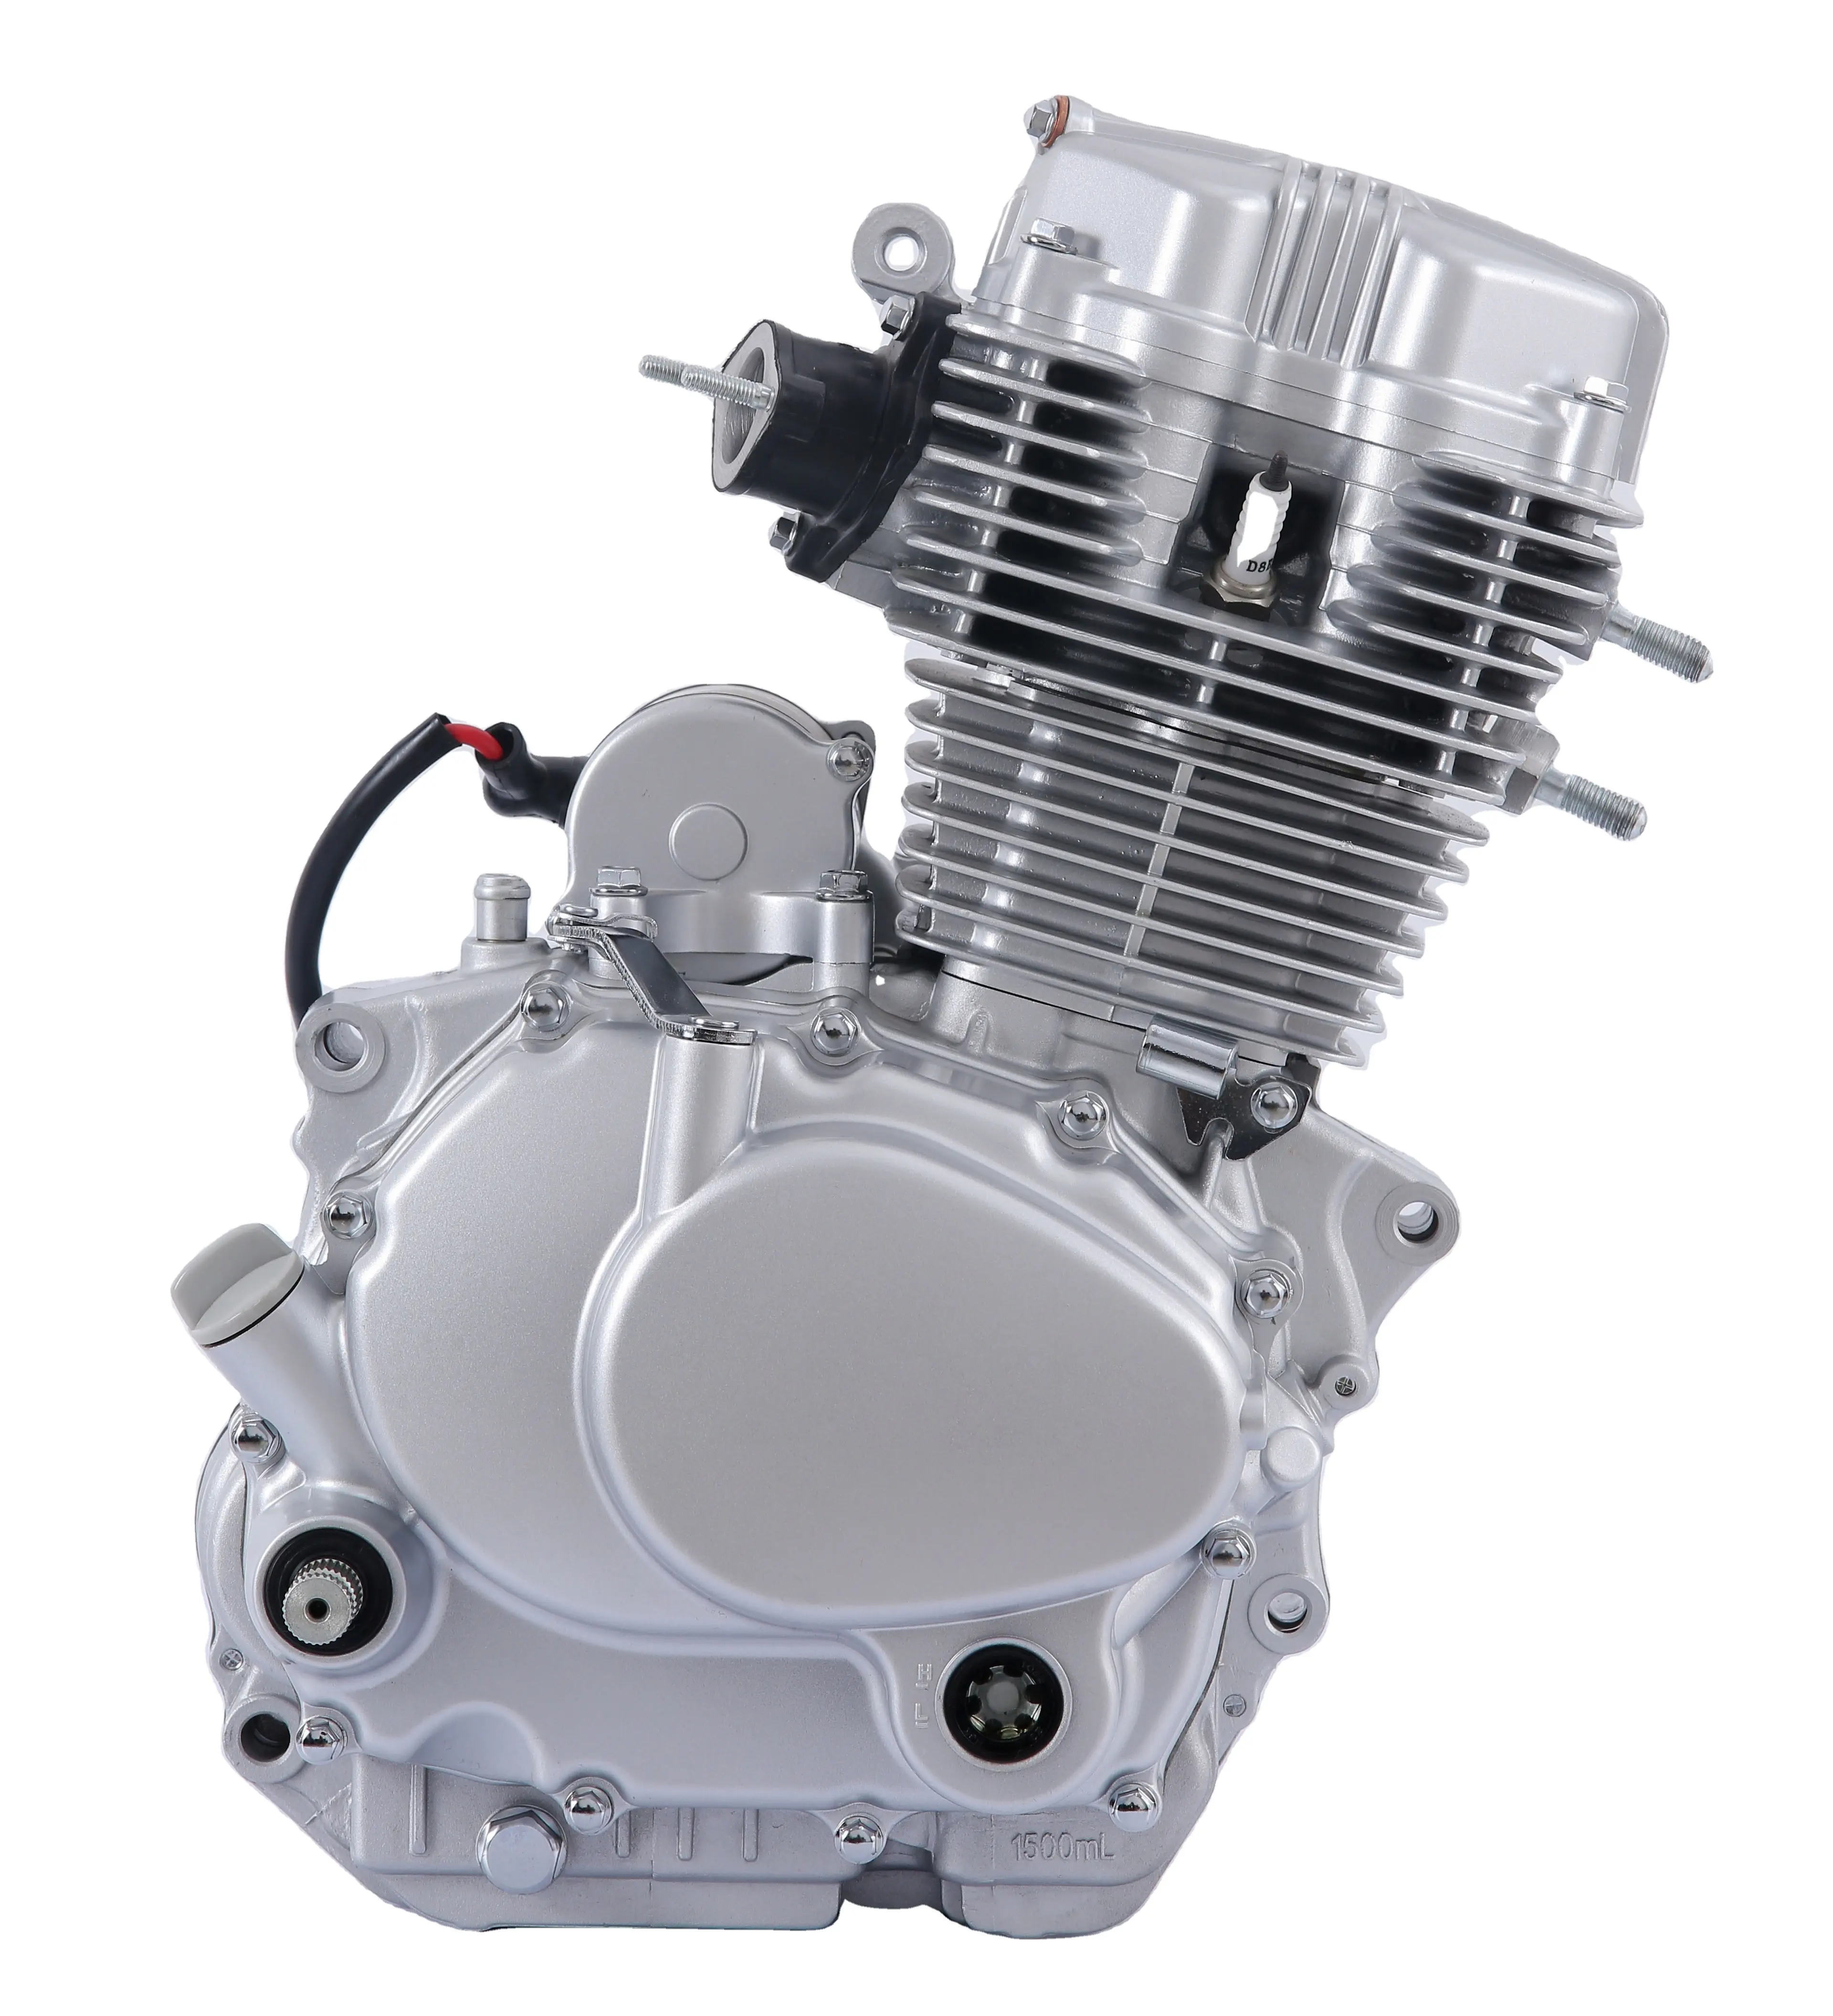 オートバイ用CG200実用的で高品質で便利なメンテナンスエンジン